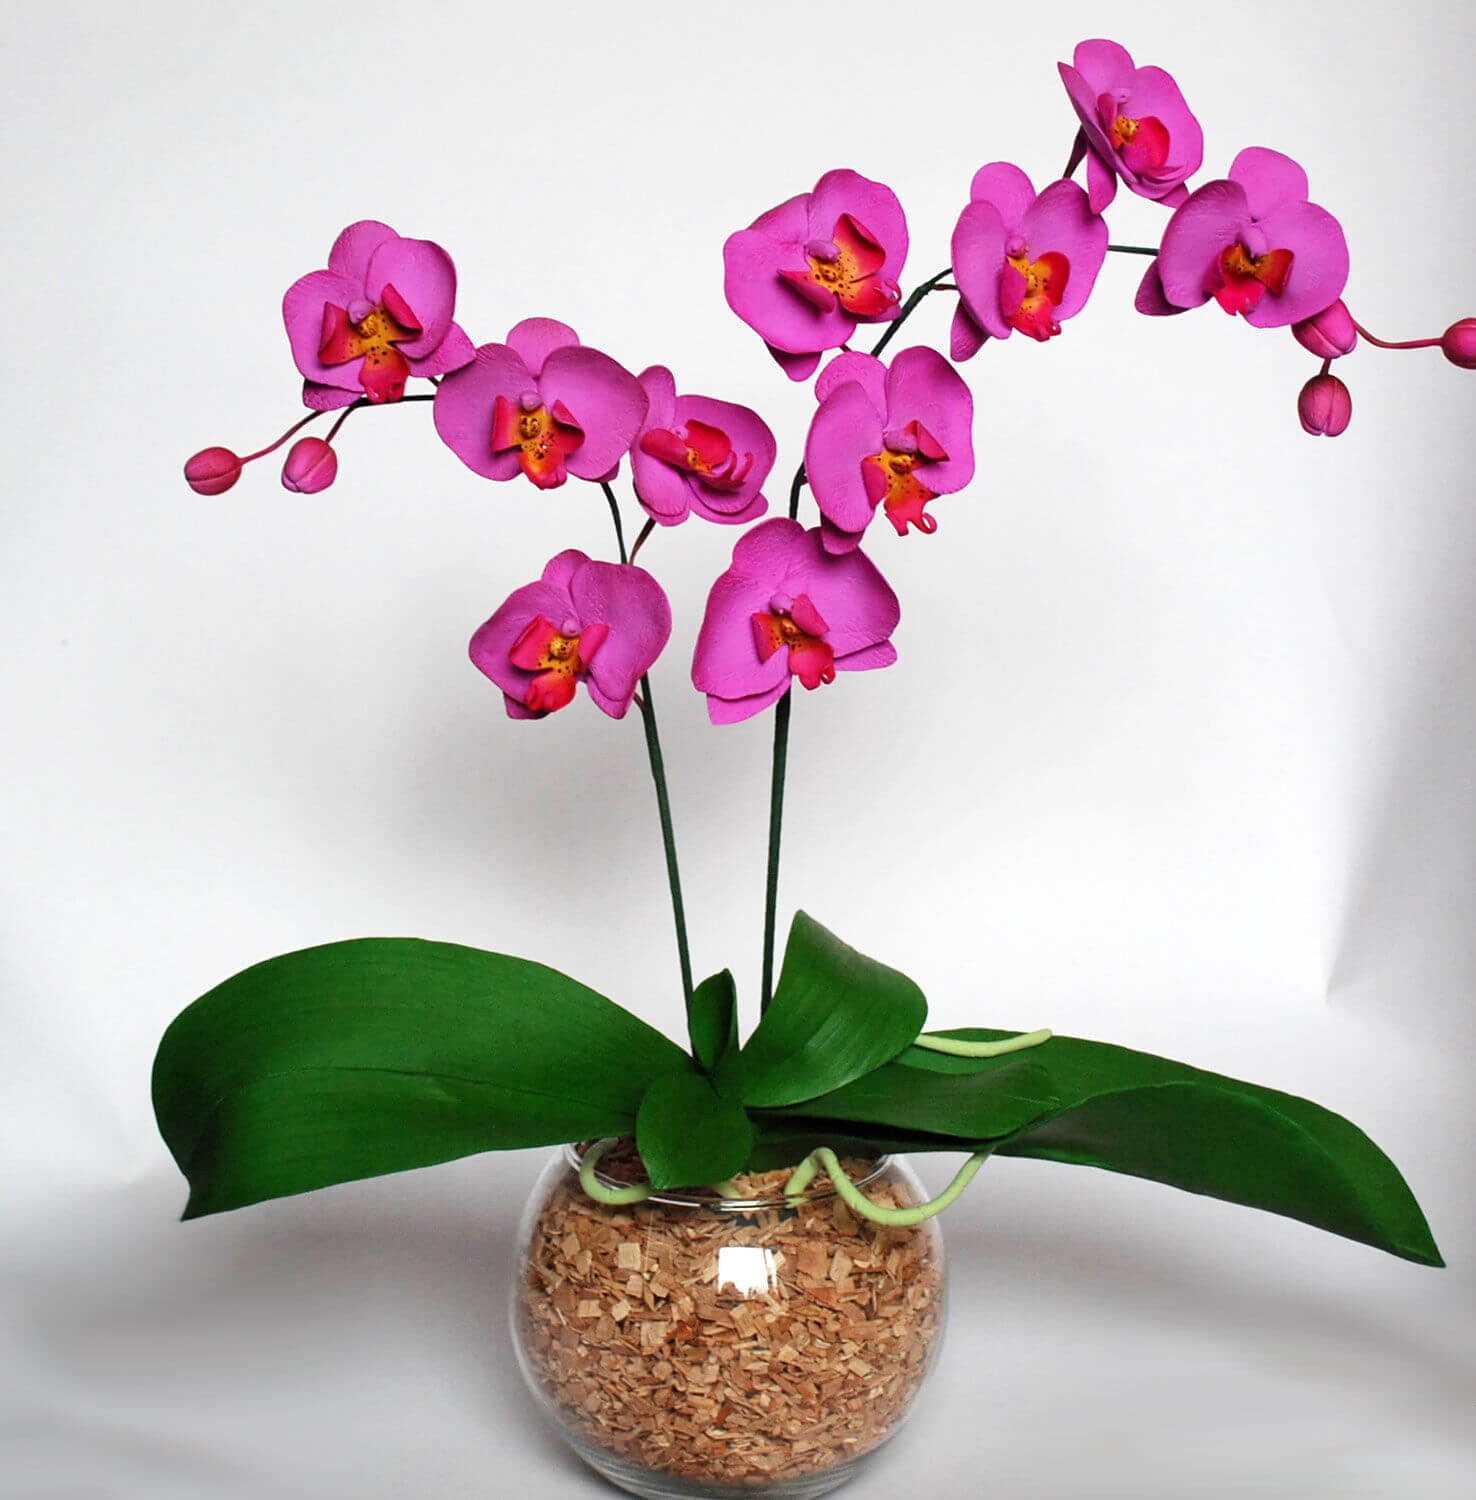 Удивительные творения природы — мини-орхидеи. обзор видов и сортов, рекомендации по выращиванию